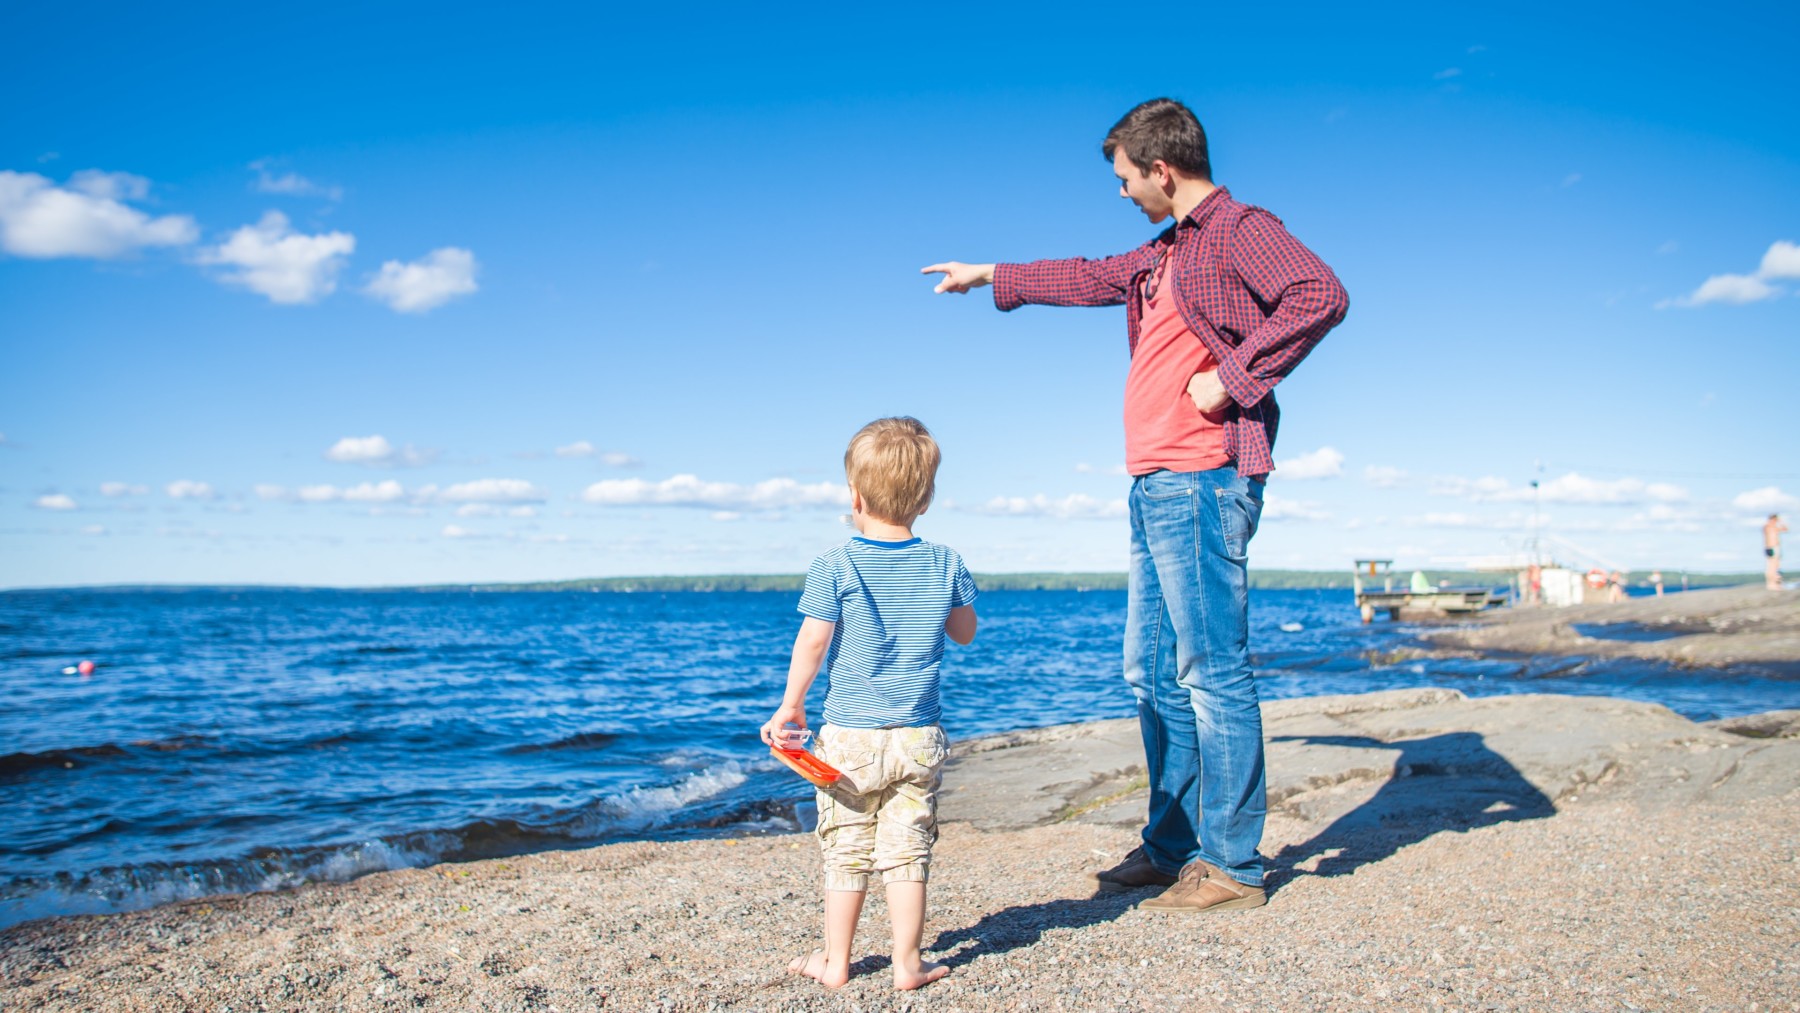 Am Ufer eines Sees zeigt ein Mann auf etwas am Horizont, während ein Kind in die gleiche Richtung schaut.